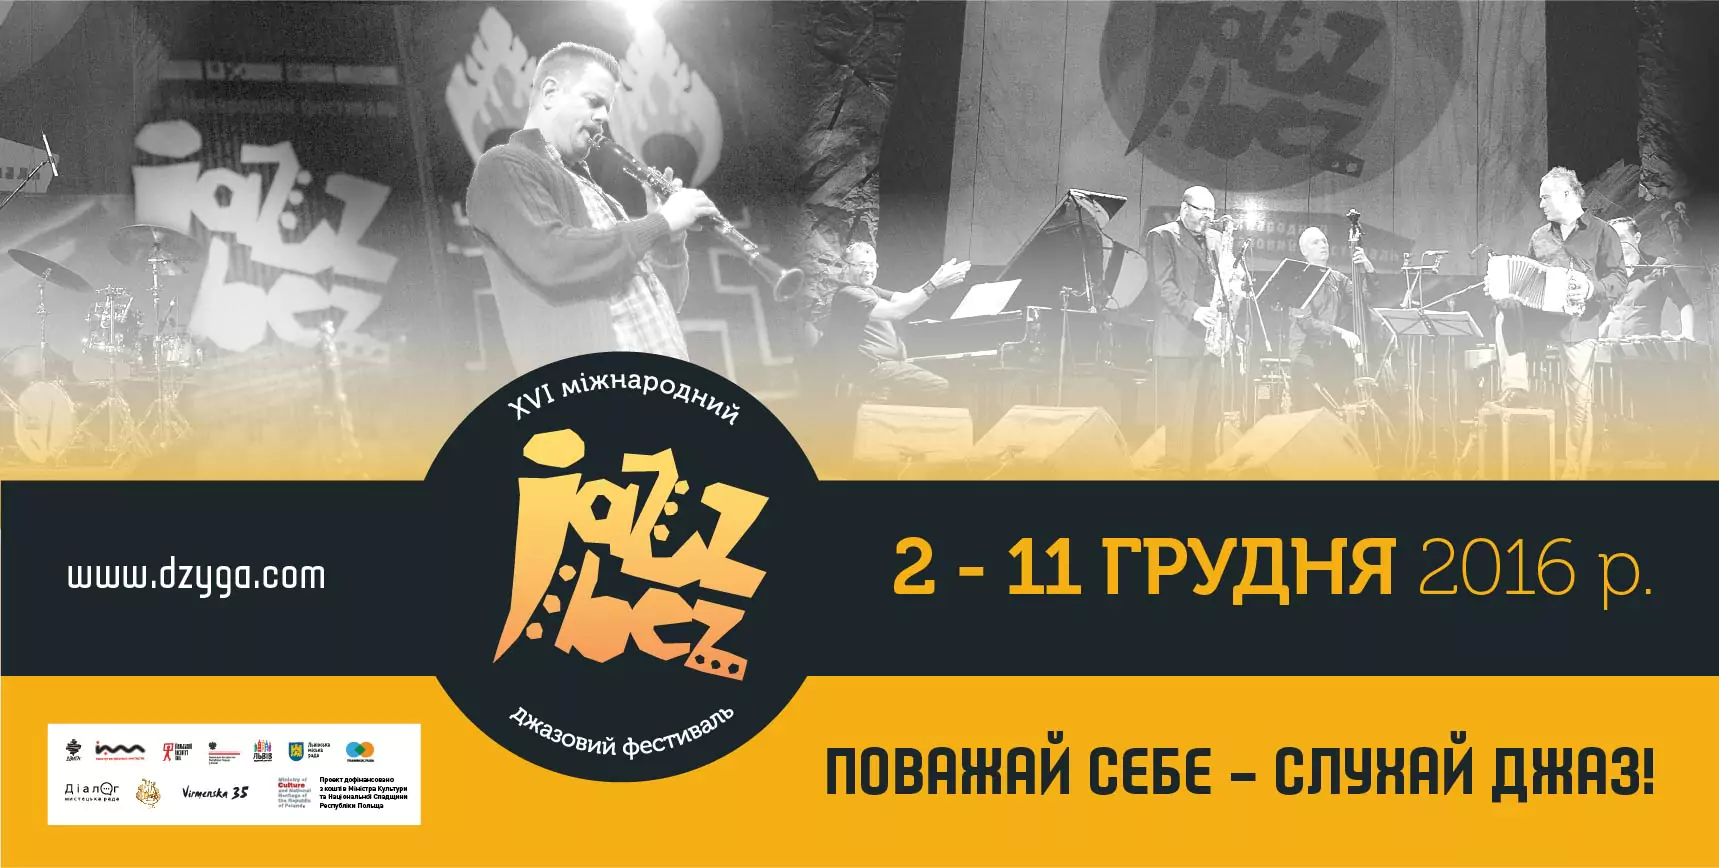 Із 2 по 11 грудня відбудеться одна із найбільших джазових подій року – xvІ міжнародний джазовий фест